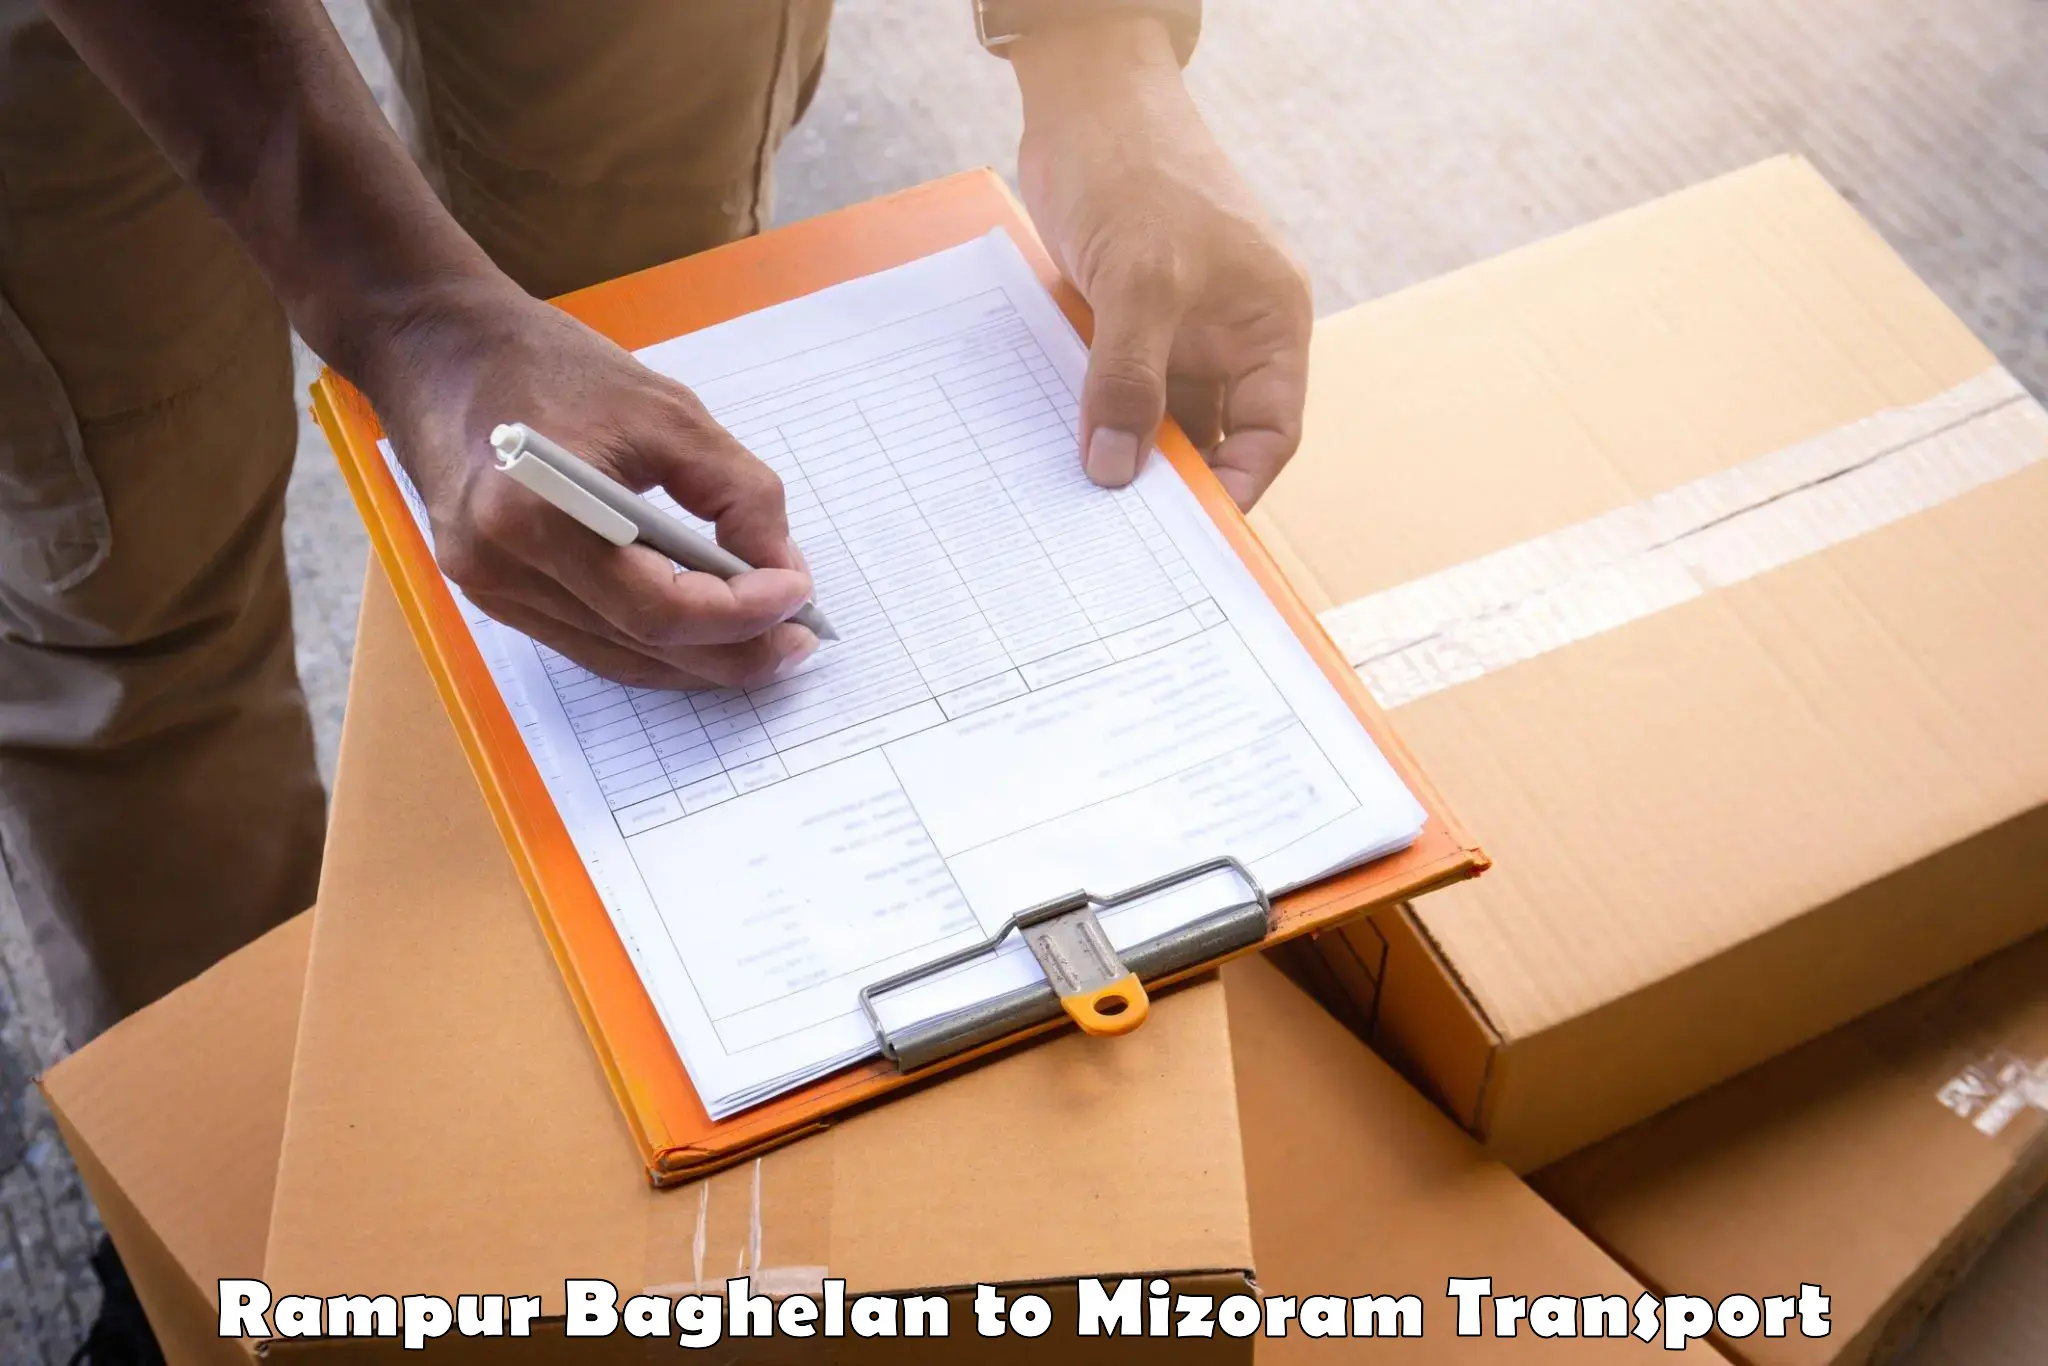 Pick up transport service Rampur Baghelan to Mizoram University Aizawl